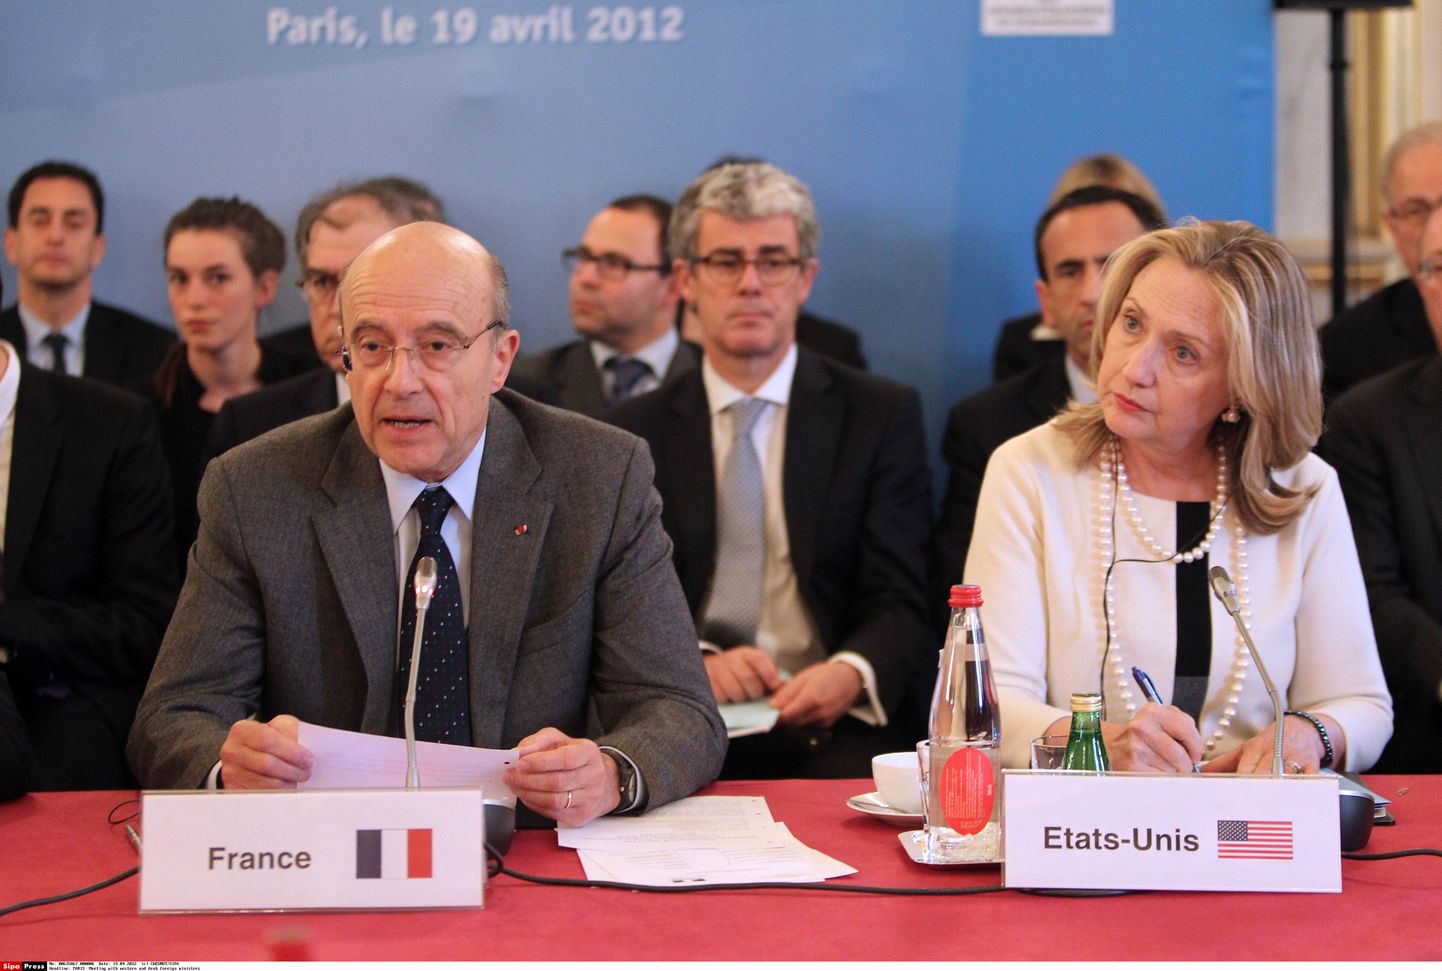 Prantsuse välisminister Alain Juppé koos USA kolleegi Hillary Clintoniga täna Pariisis.